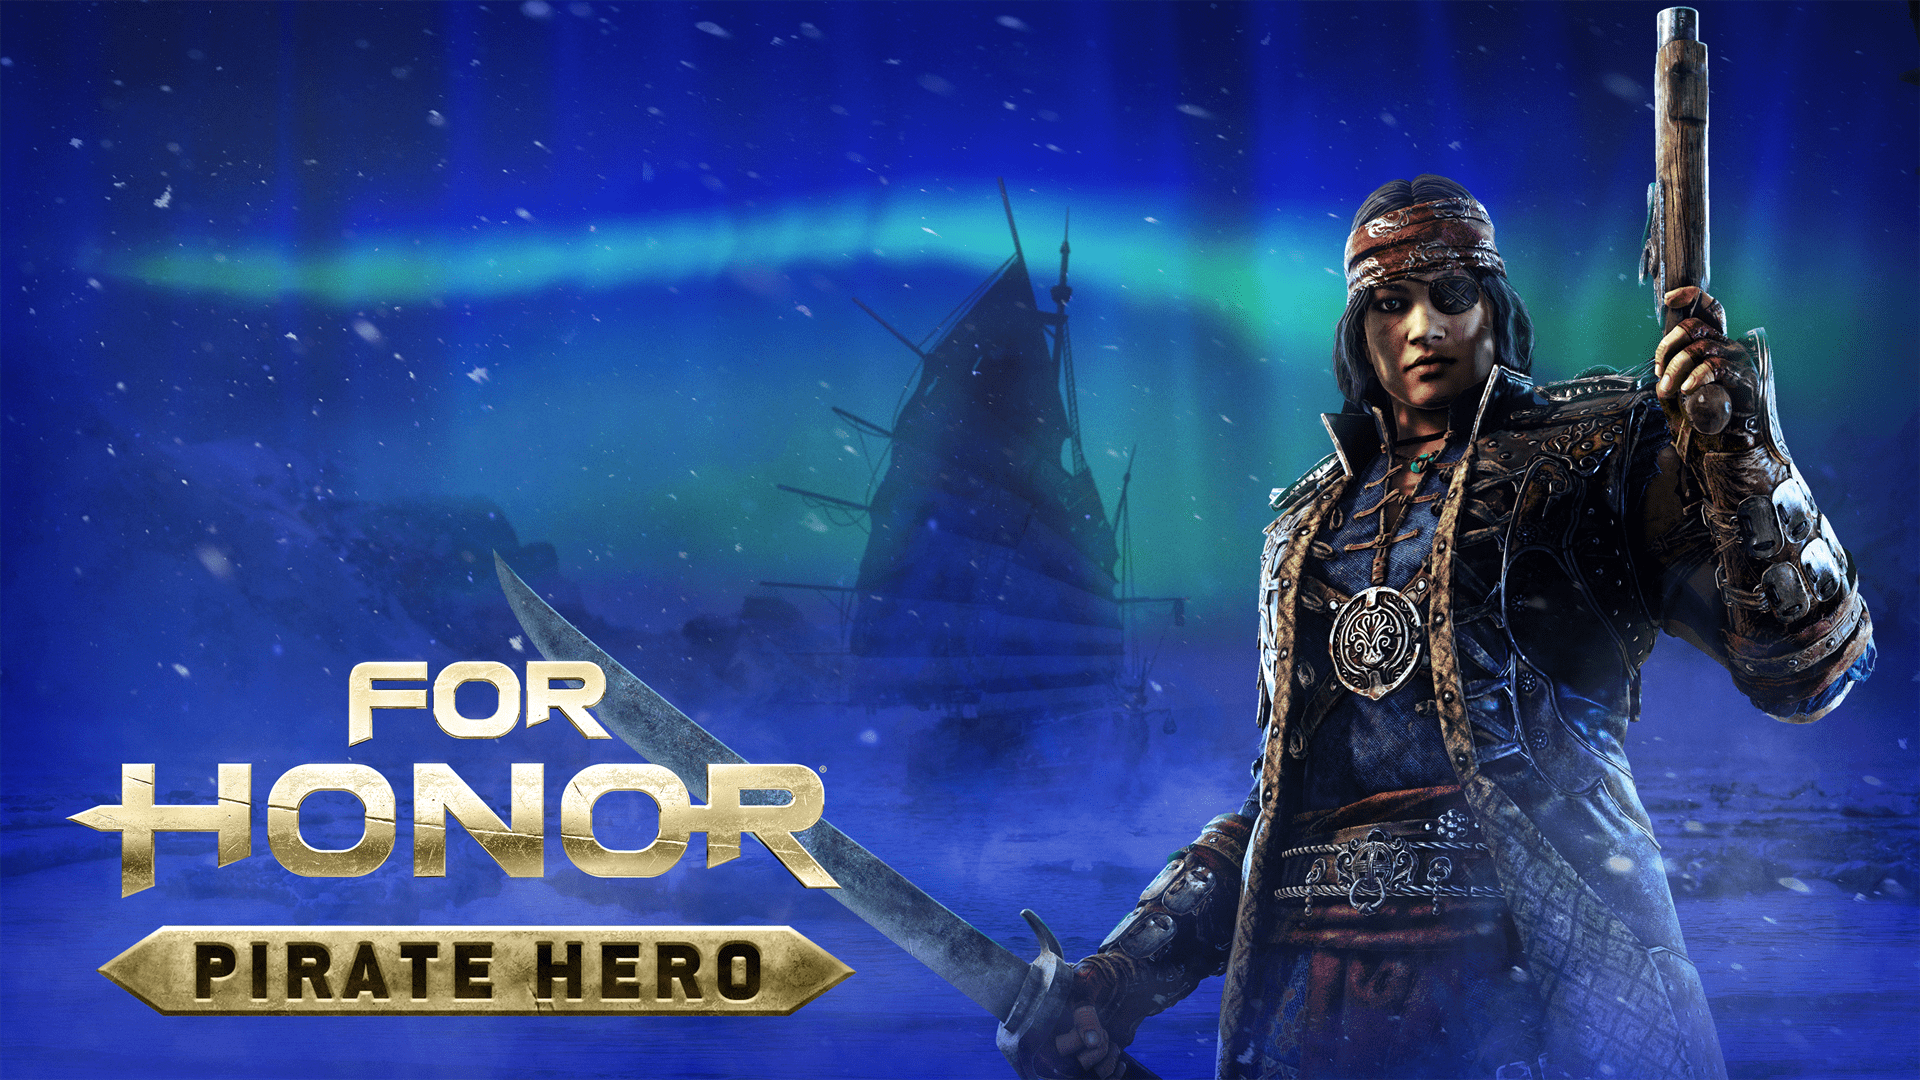 เปิดตัว "Pirate Hero" โจรสลัดผู้แข็งแกร่งพร้อมขึ้นฝั่งประชันฝีมือใน For Honor วันที่ 27 มกราคมนี้